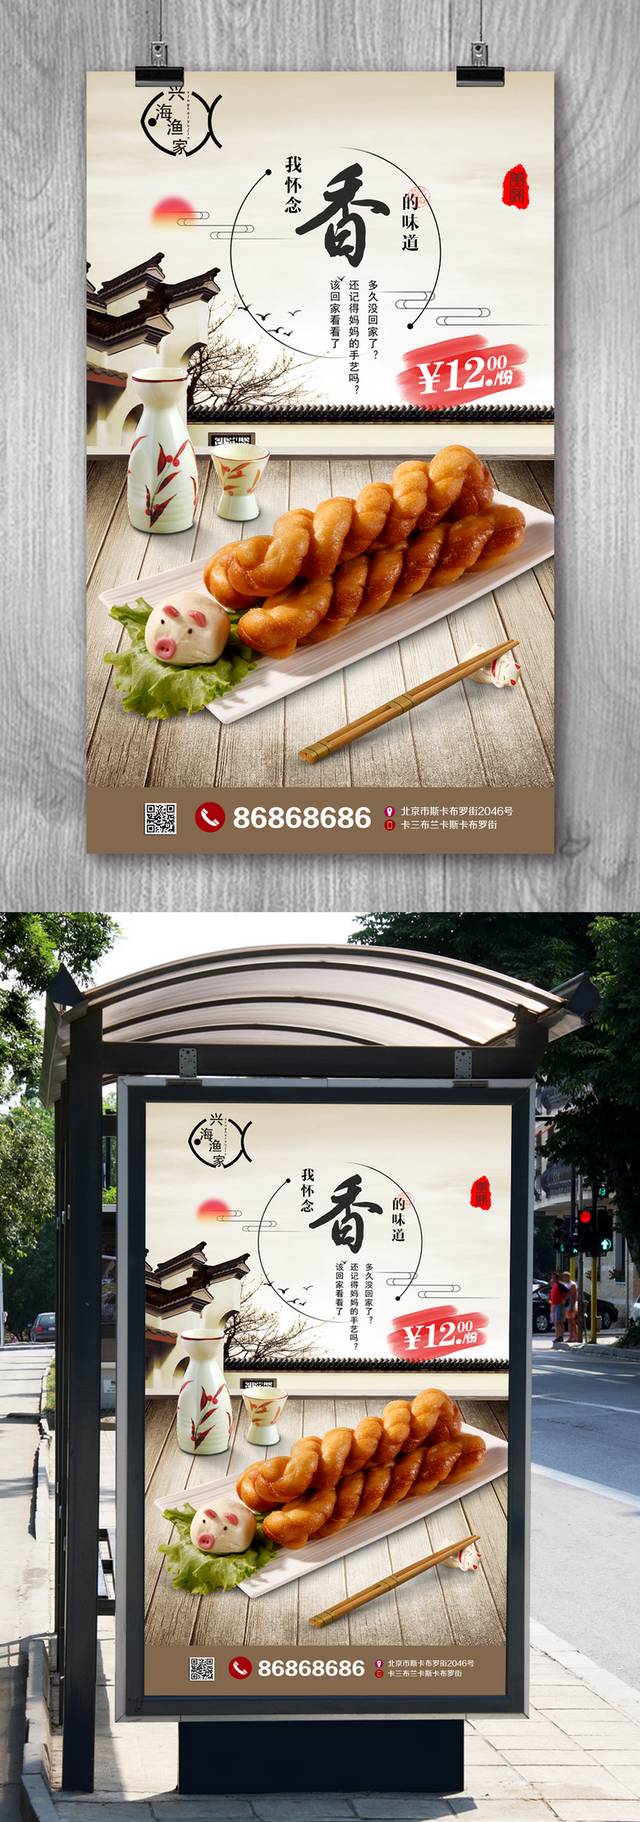 麻花美食促销海报设计